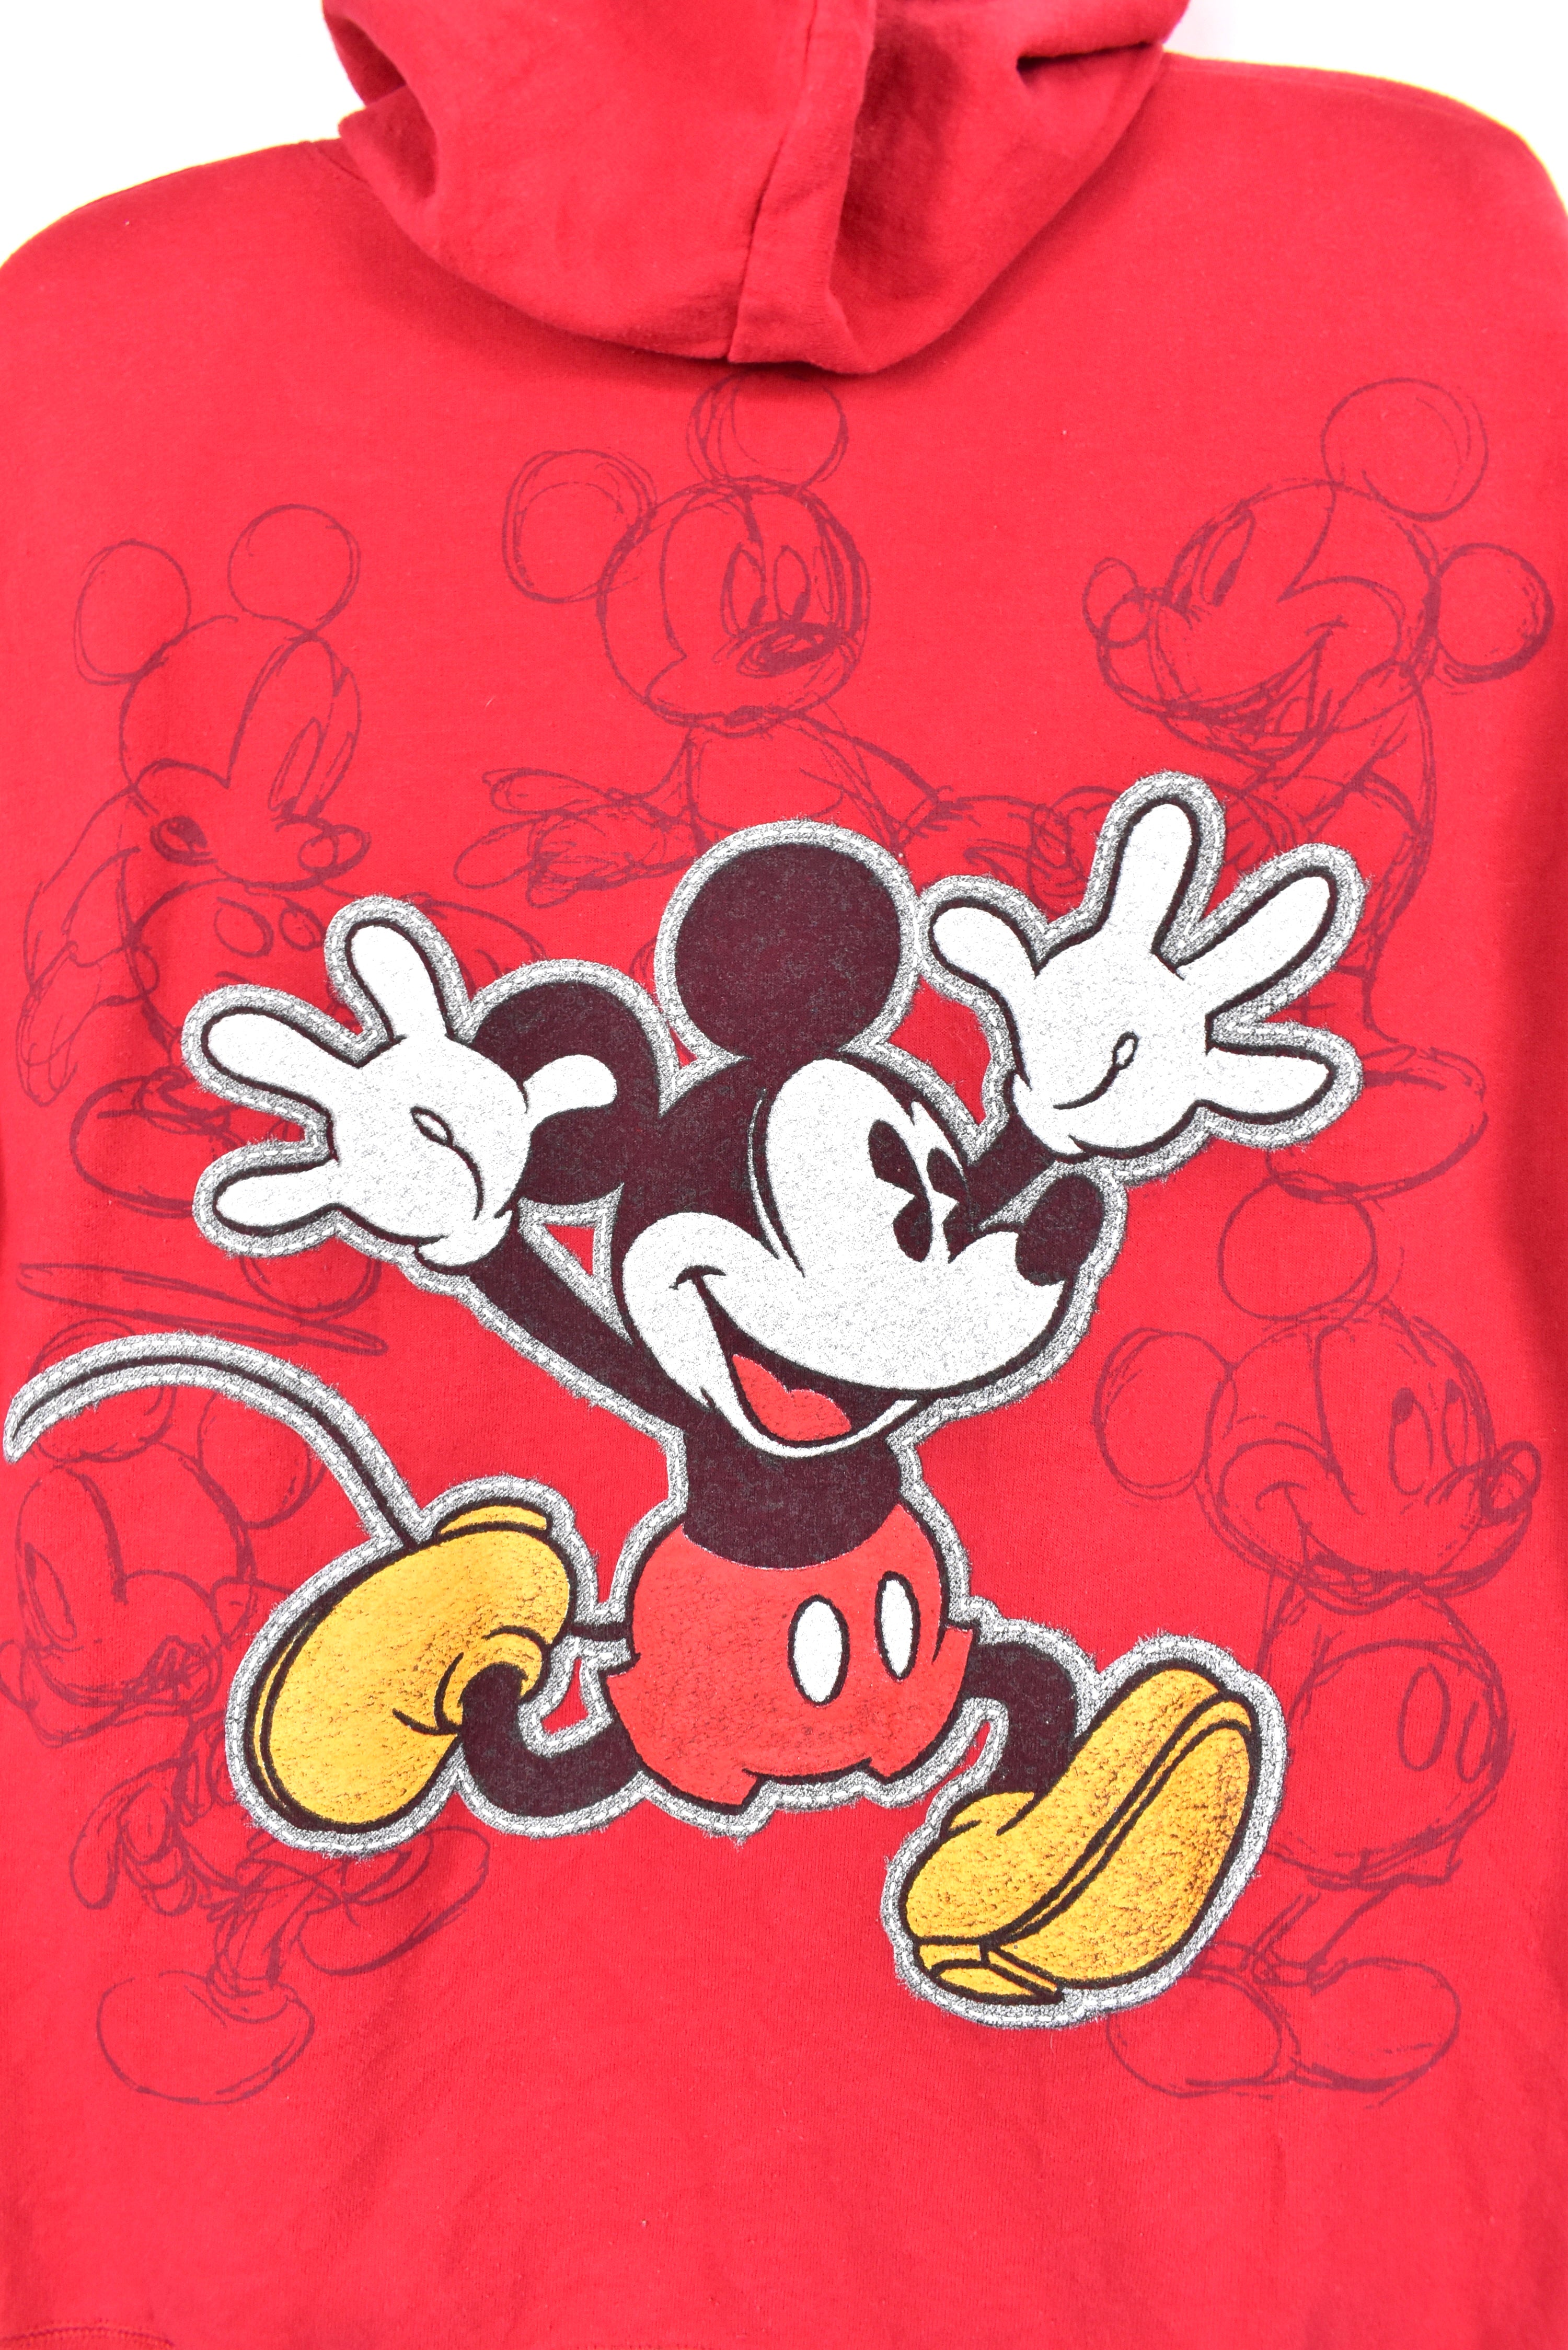 Vintage Mickey Mouse hoodie, Disney red graphic sweatshirt - AU M DISNEY / CARTOON